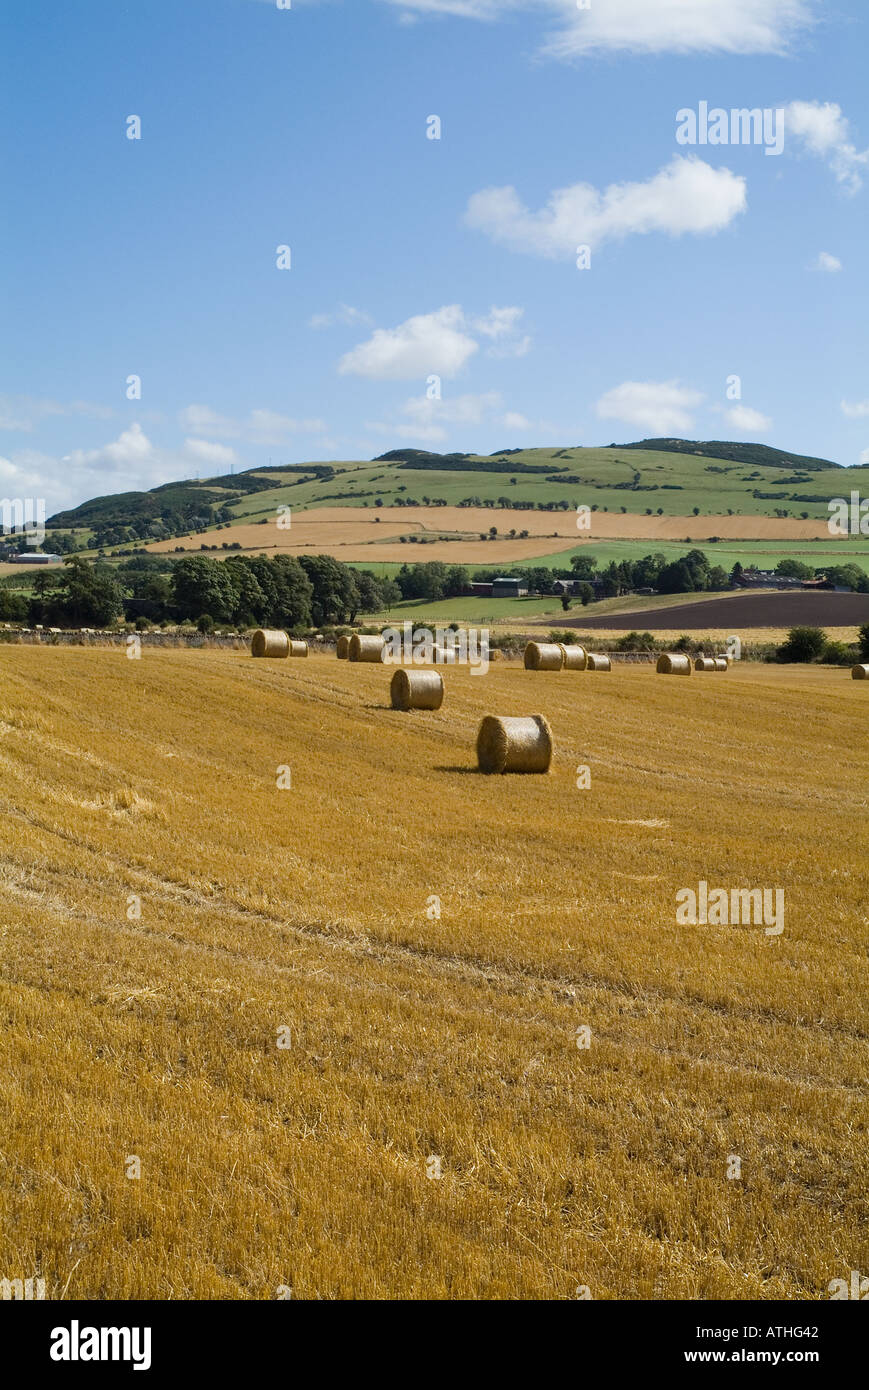 dh ORMISTON HILL PERTHSHIRE Scottish Fields Gerstenstrohsäcke in der Landwirtschaft landwirtschaftliche Ballen auf dem Land Schottland Ballen Stockfoto